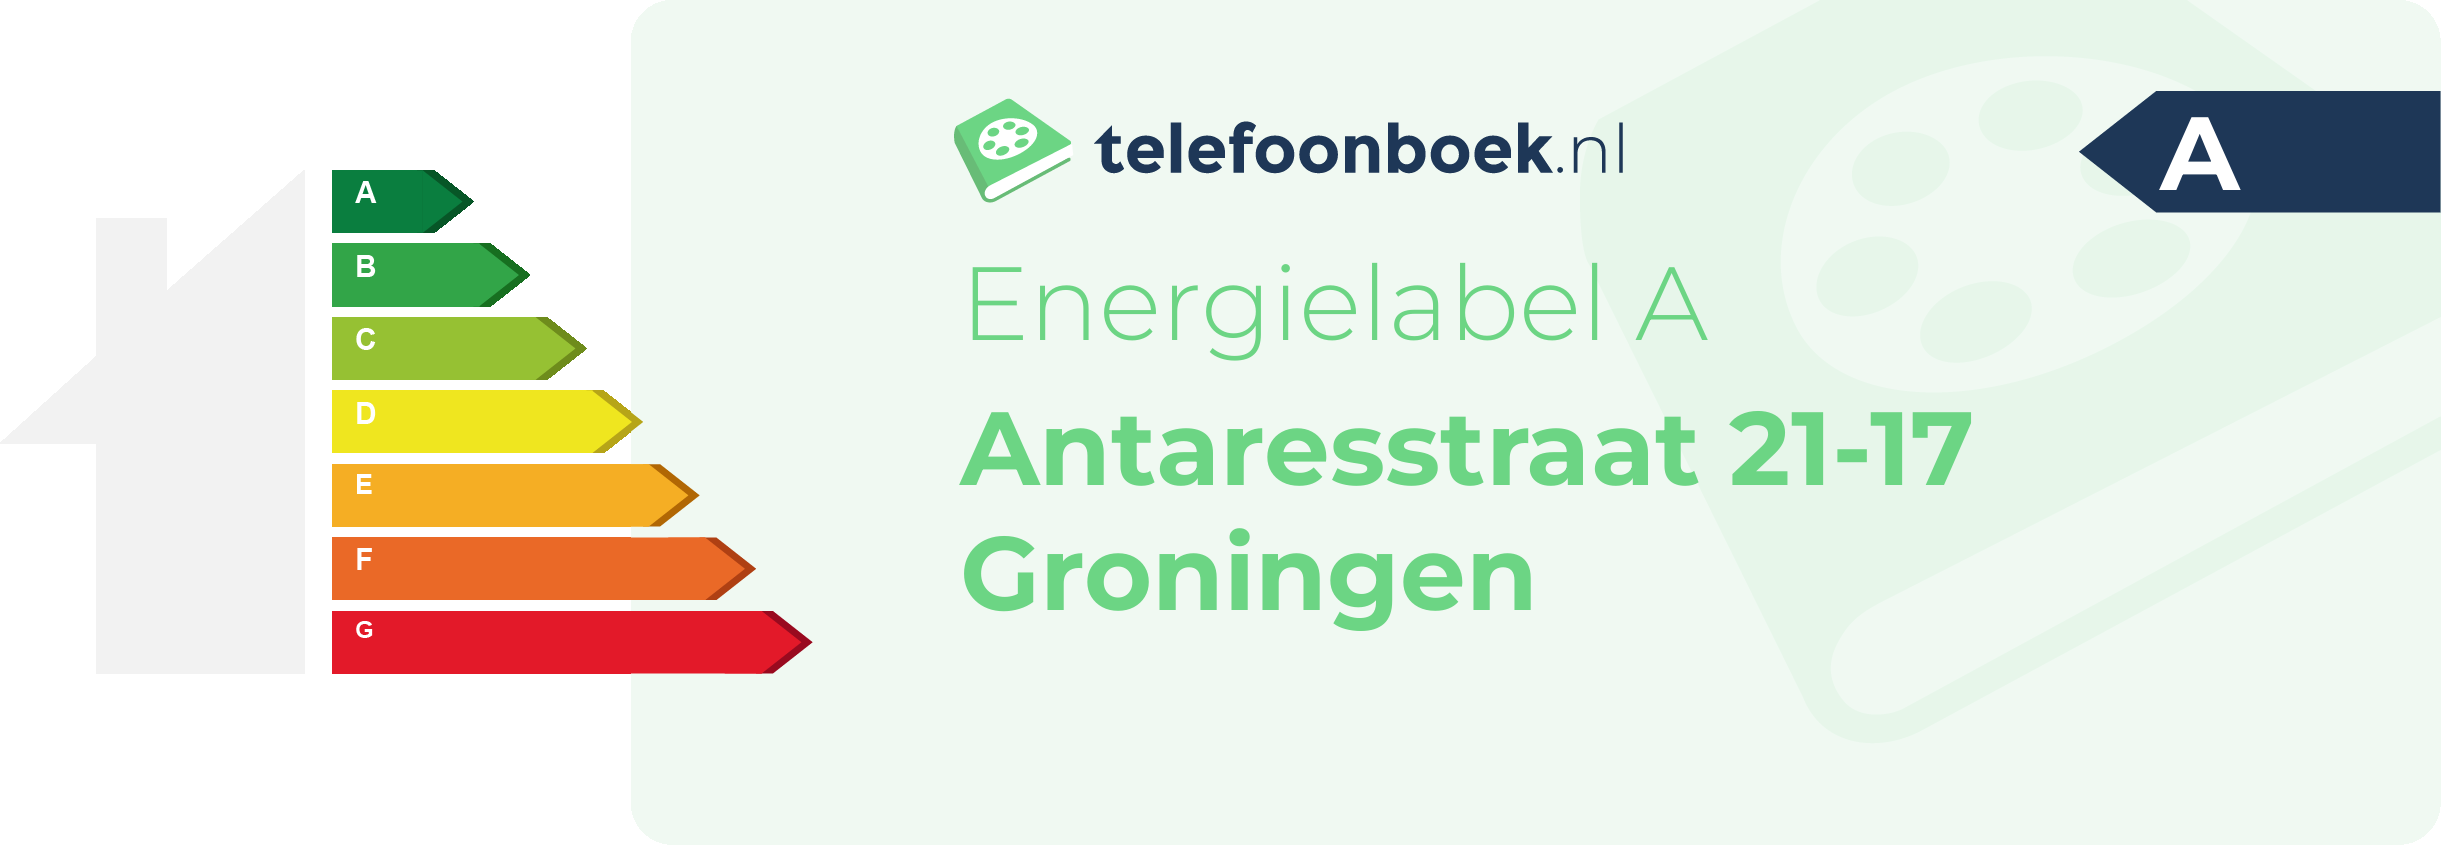 Energielabel Antaresstraat 21-17 Groningen